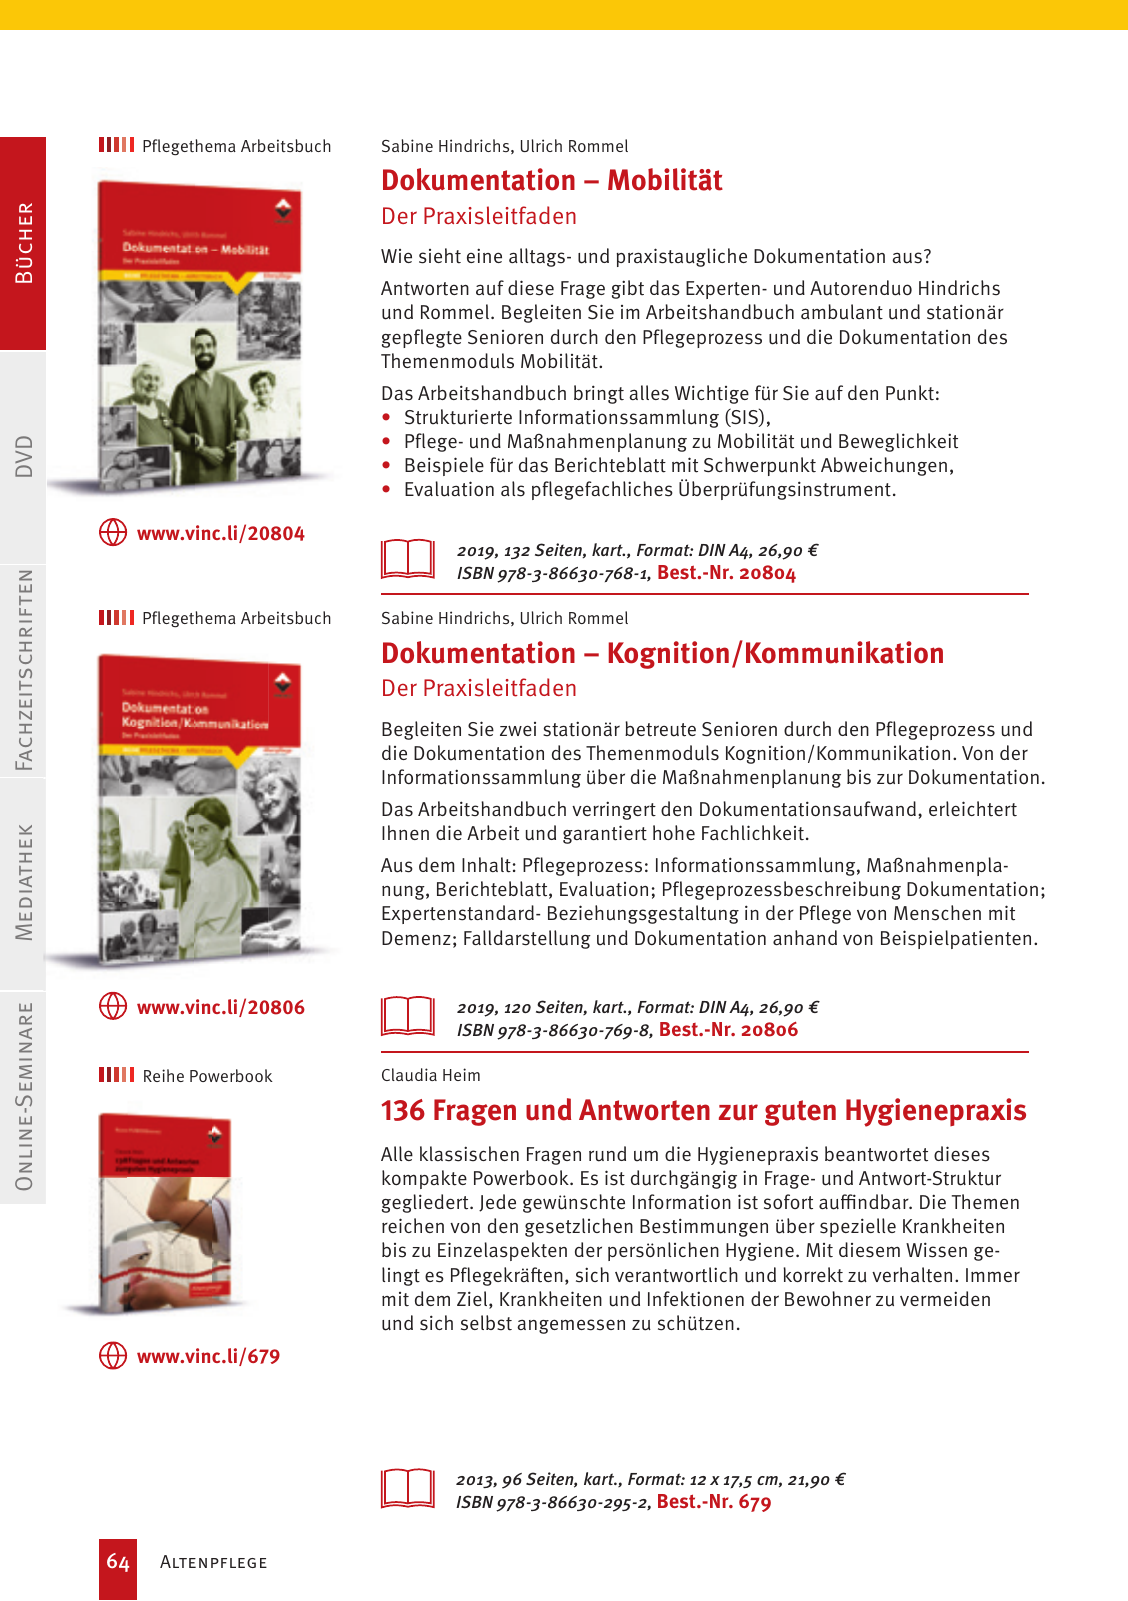 Vorschau Vincentz Verlagsprogramm 2020 Seite 64